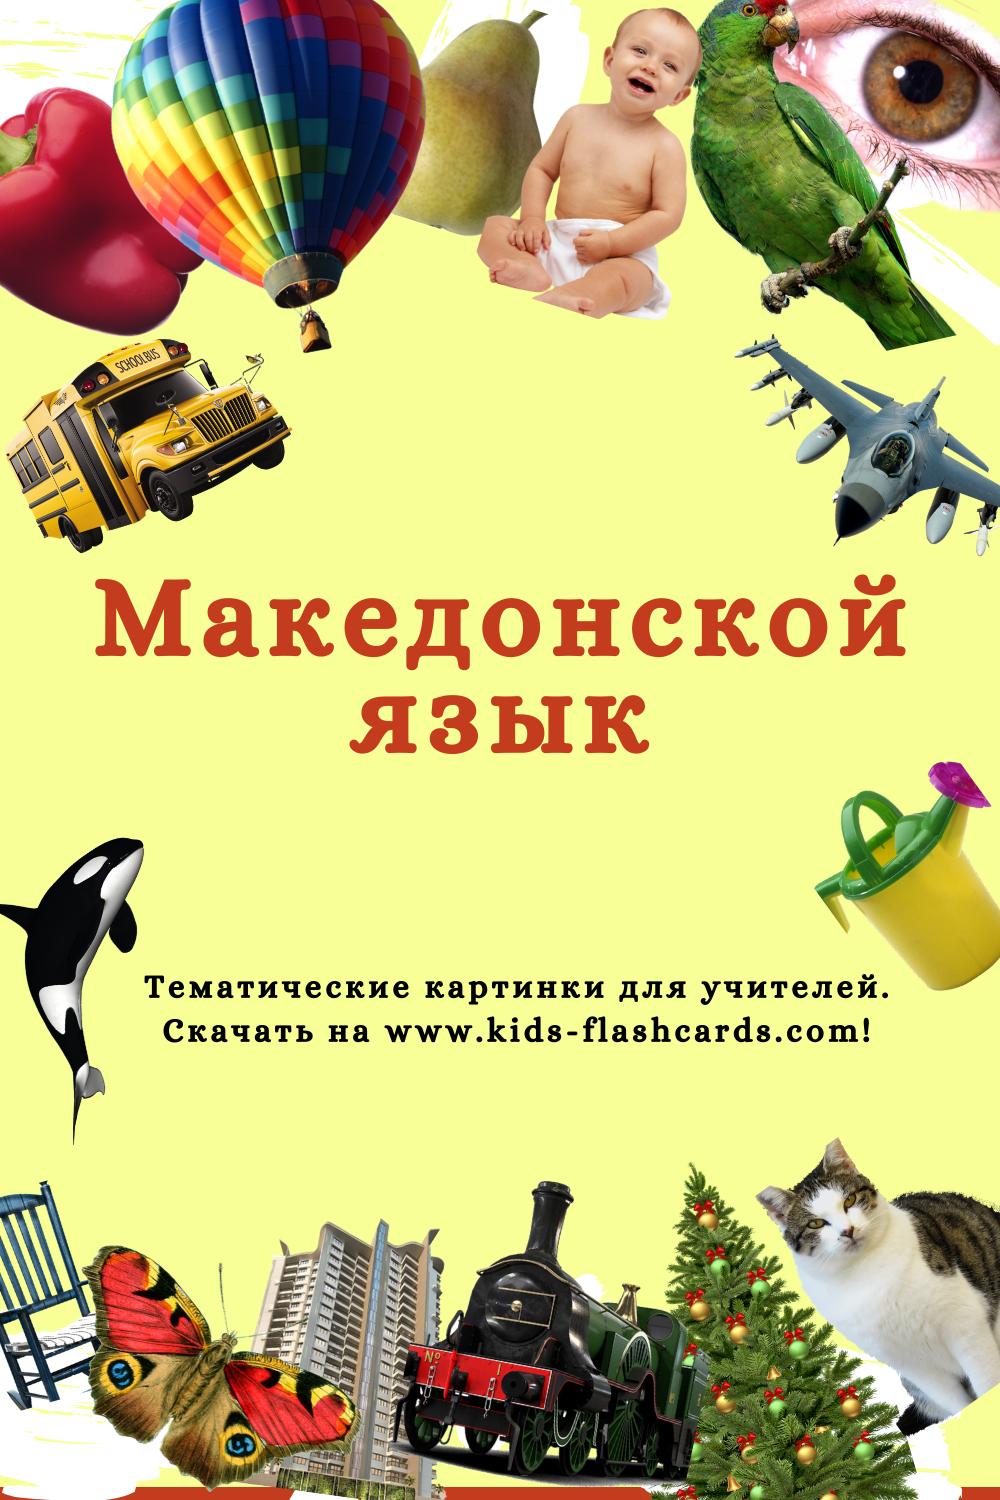 Македонский язык - распечатки для детей